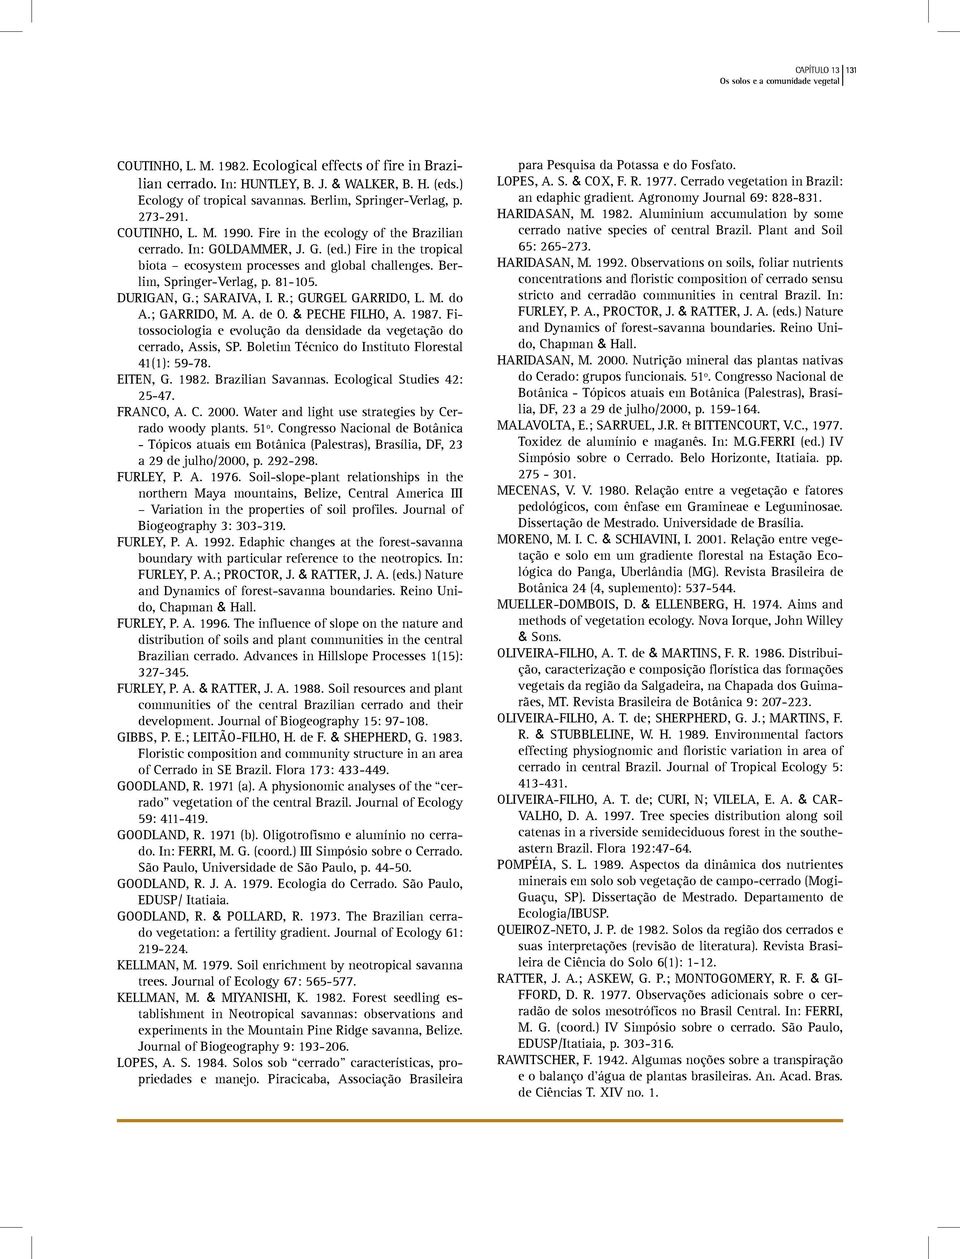 DURIGAN, G.; SARAIVA, I. R.; GURGEL GARRIDO, L. M. do A.; GARRIDO, M. A. de O. & PECHE FILHO, A. 1987. Fitossociologia e evolução da densidade da vegetação do cerrado, Assis, SP.